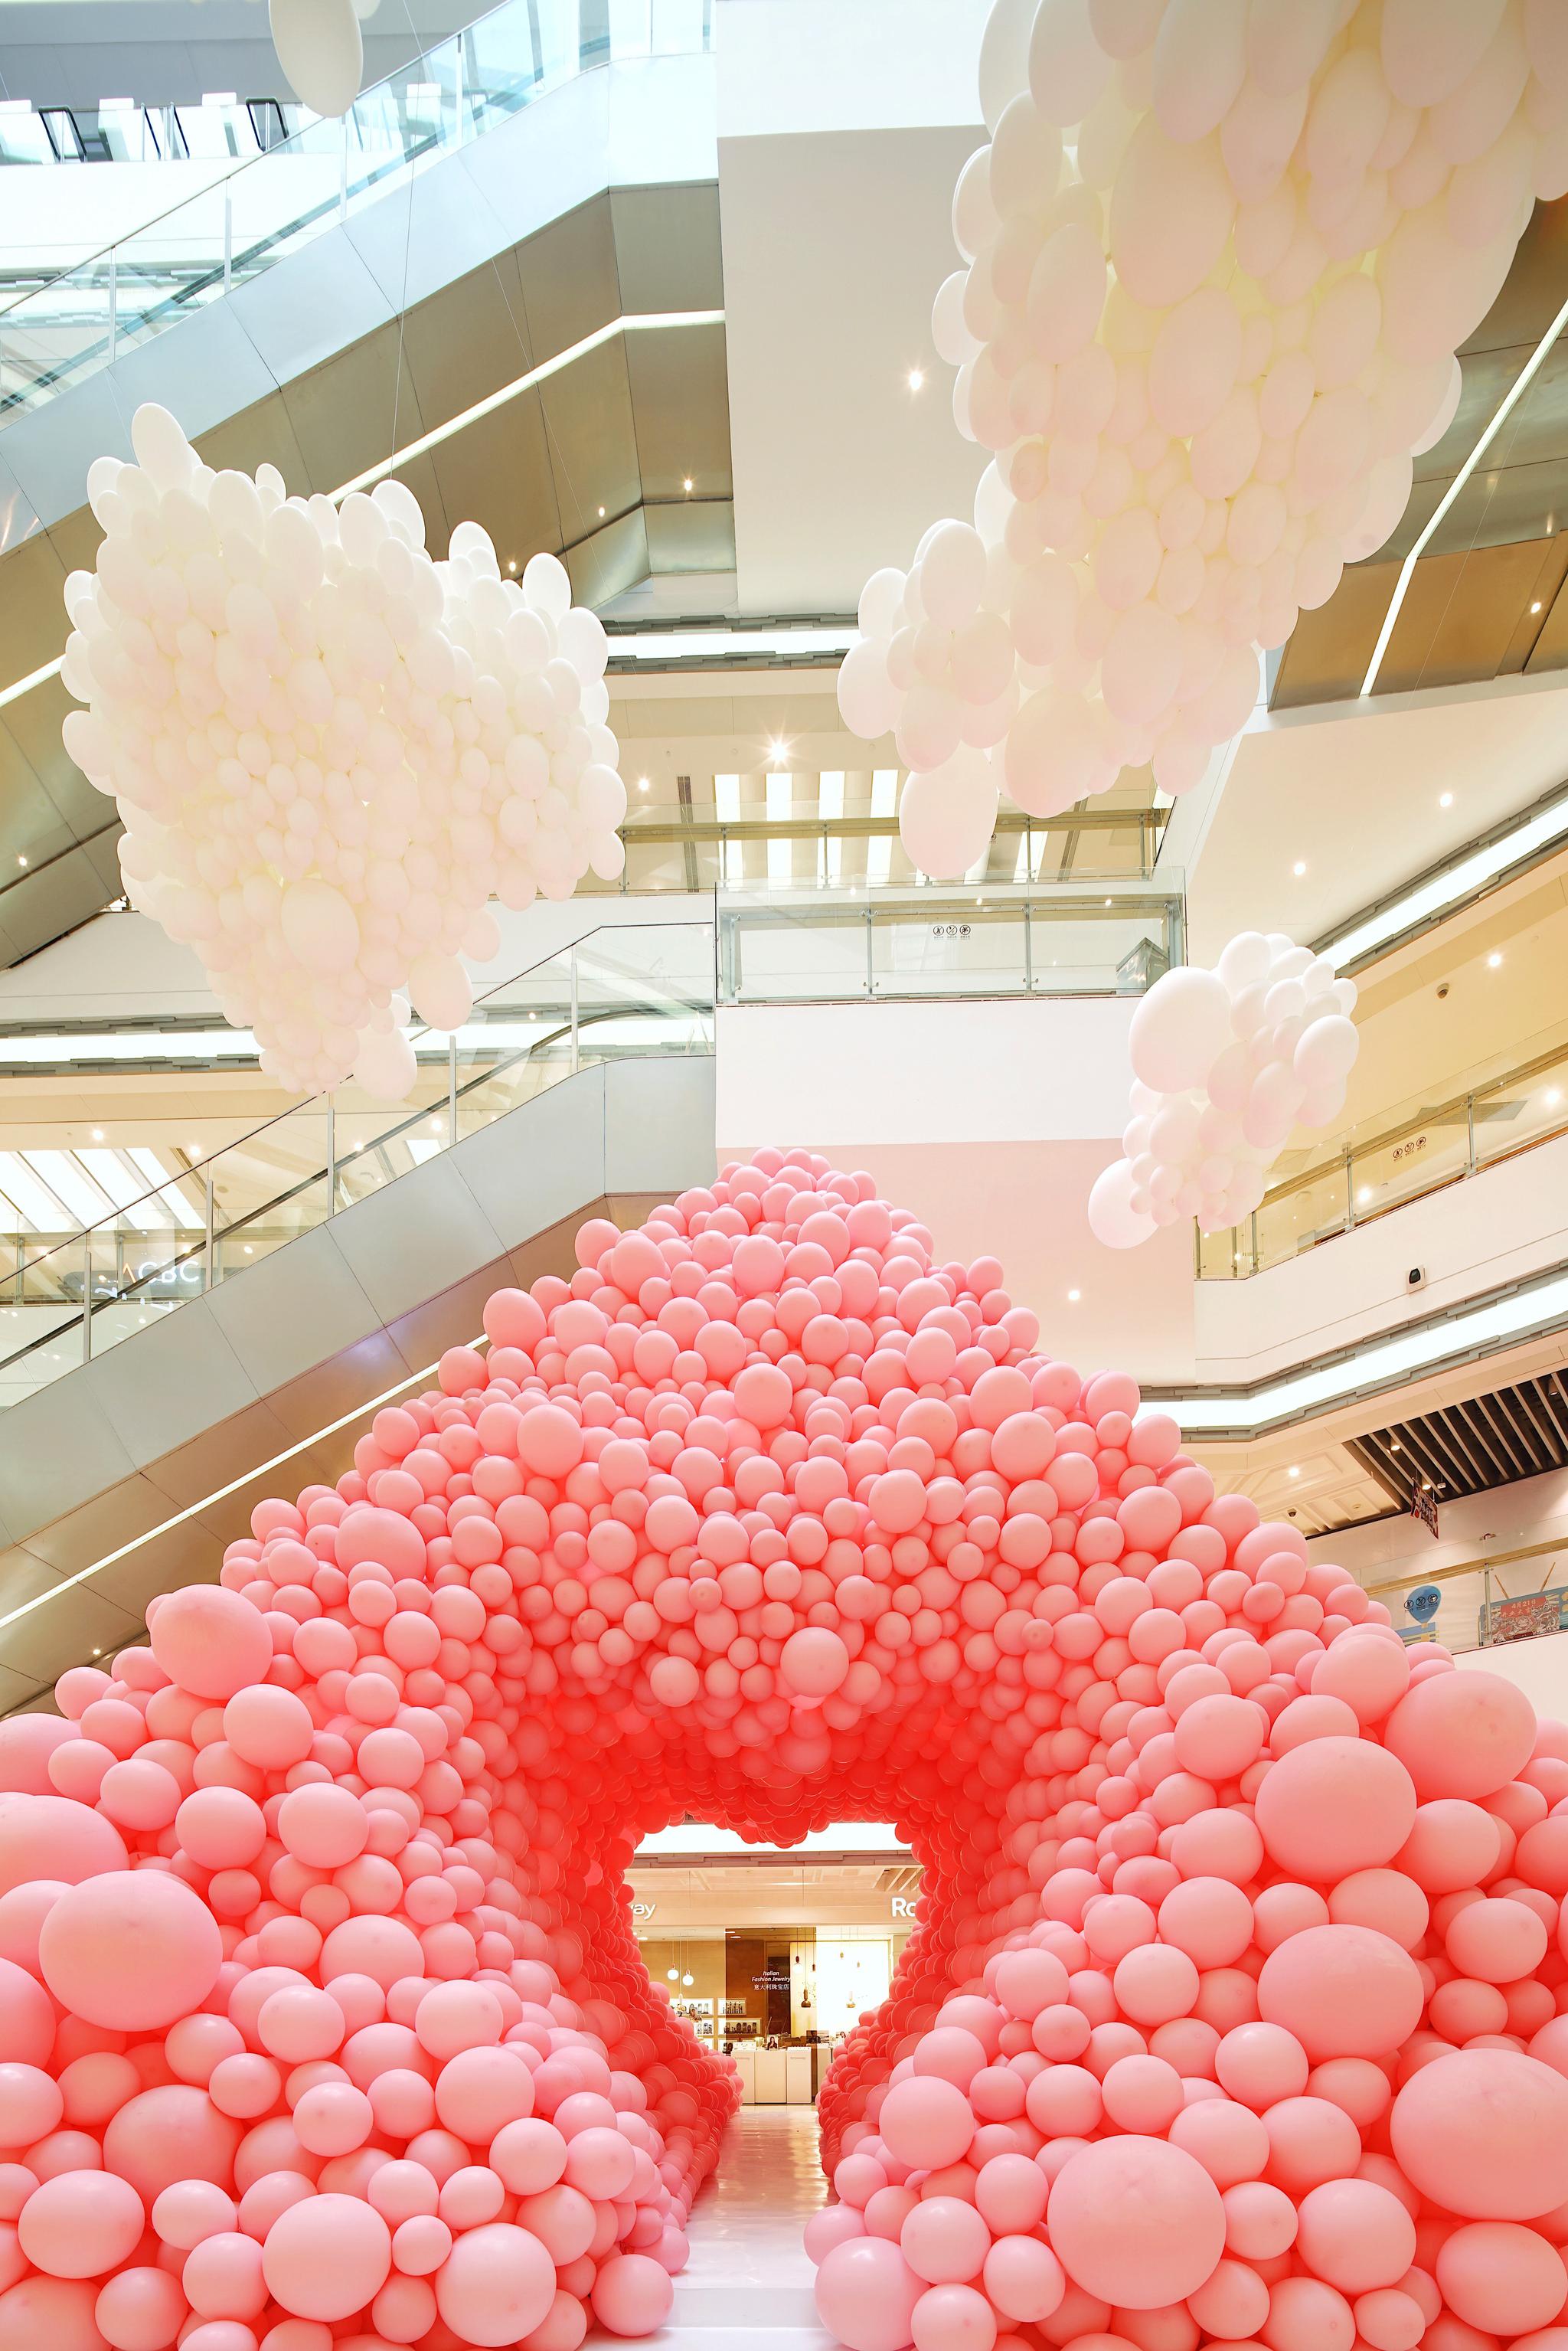 爱情地标甜蜜升级 告白气球艺术展2.0延续心动